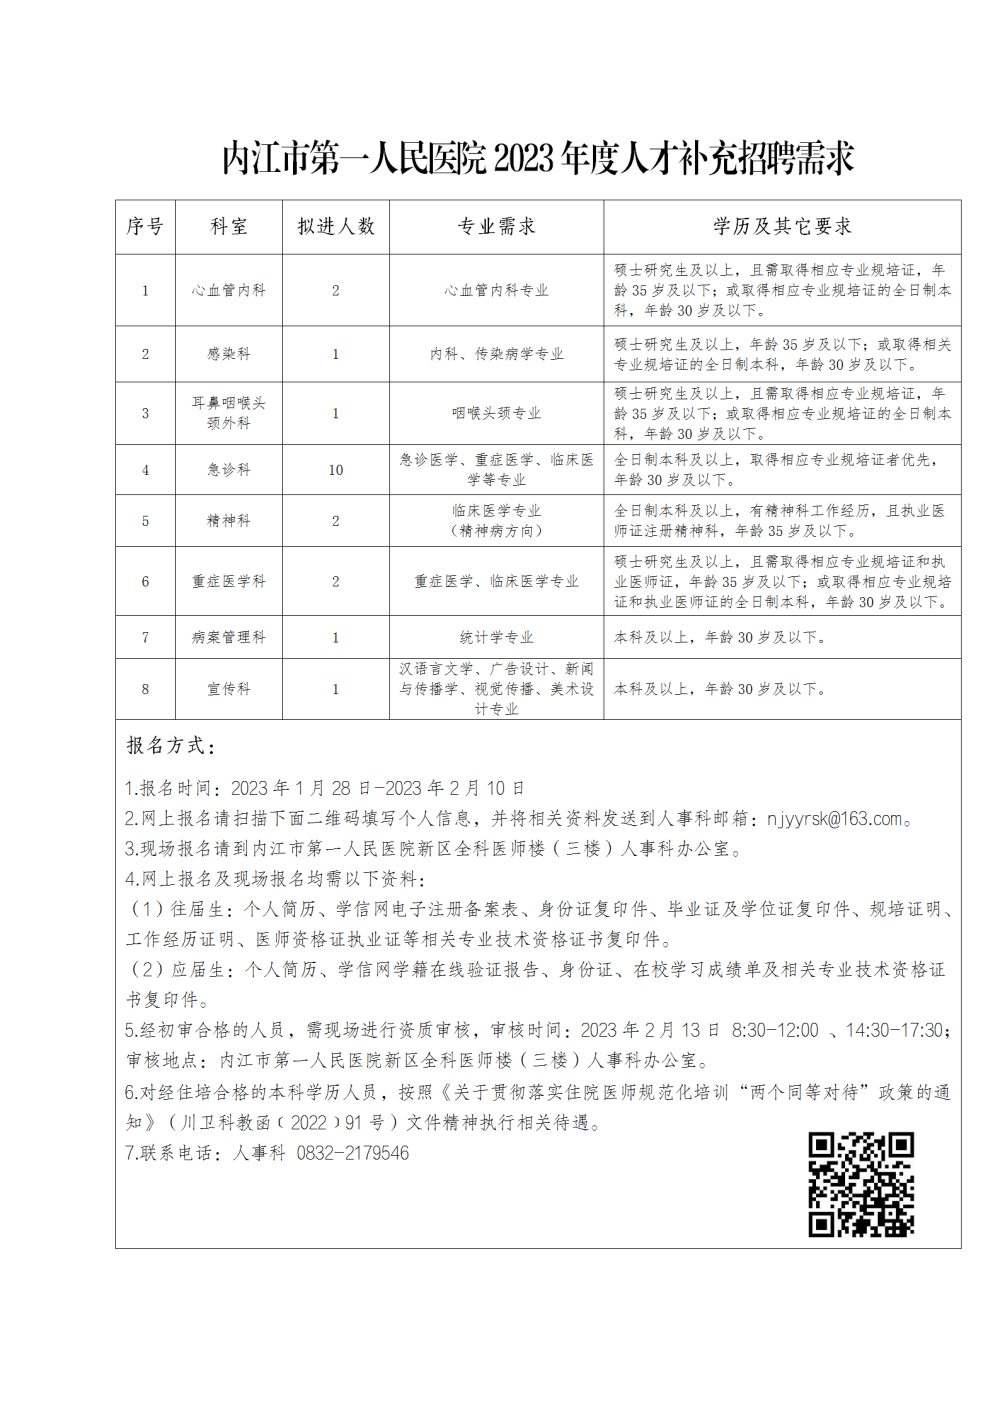 内江市第一人民医院2023年度人才补充招聘需求公告_01 - 副本.png